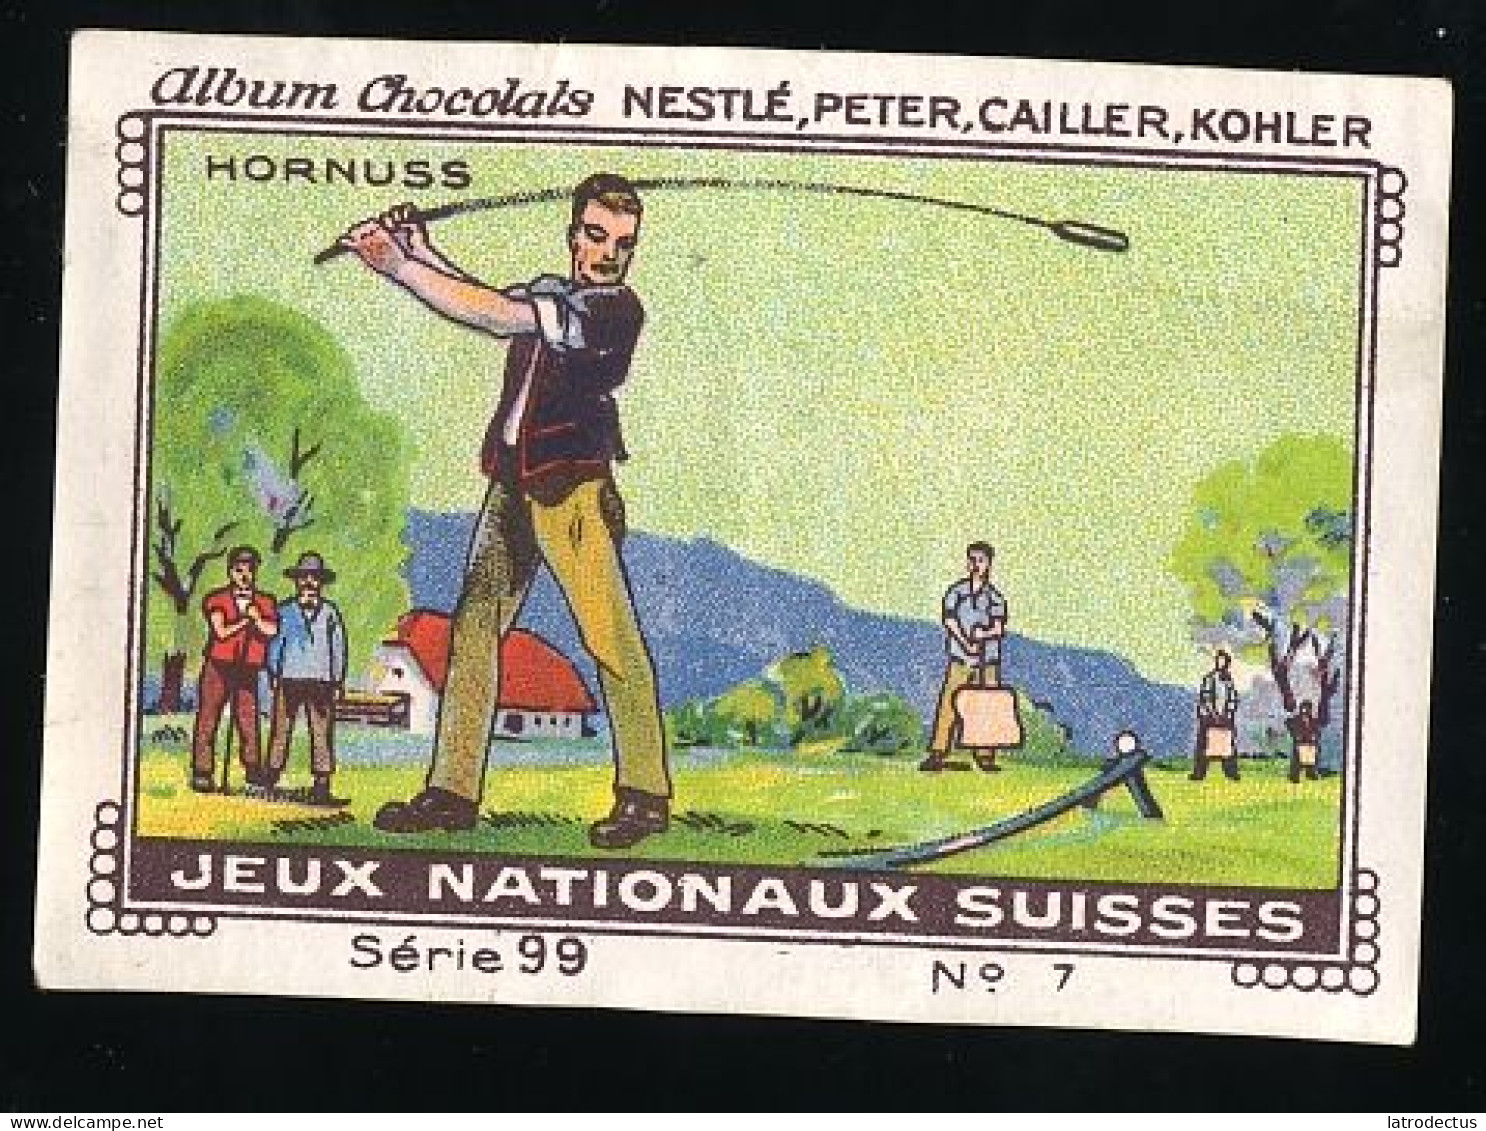 Nestlé - 99 - Jeux Nationaux Suisses, Swiss National Games - 7 - Hornuss - Nestlé